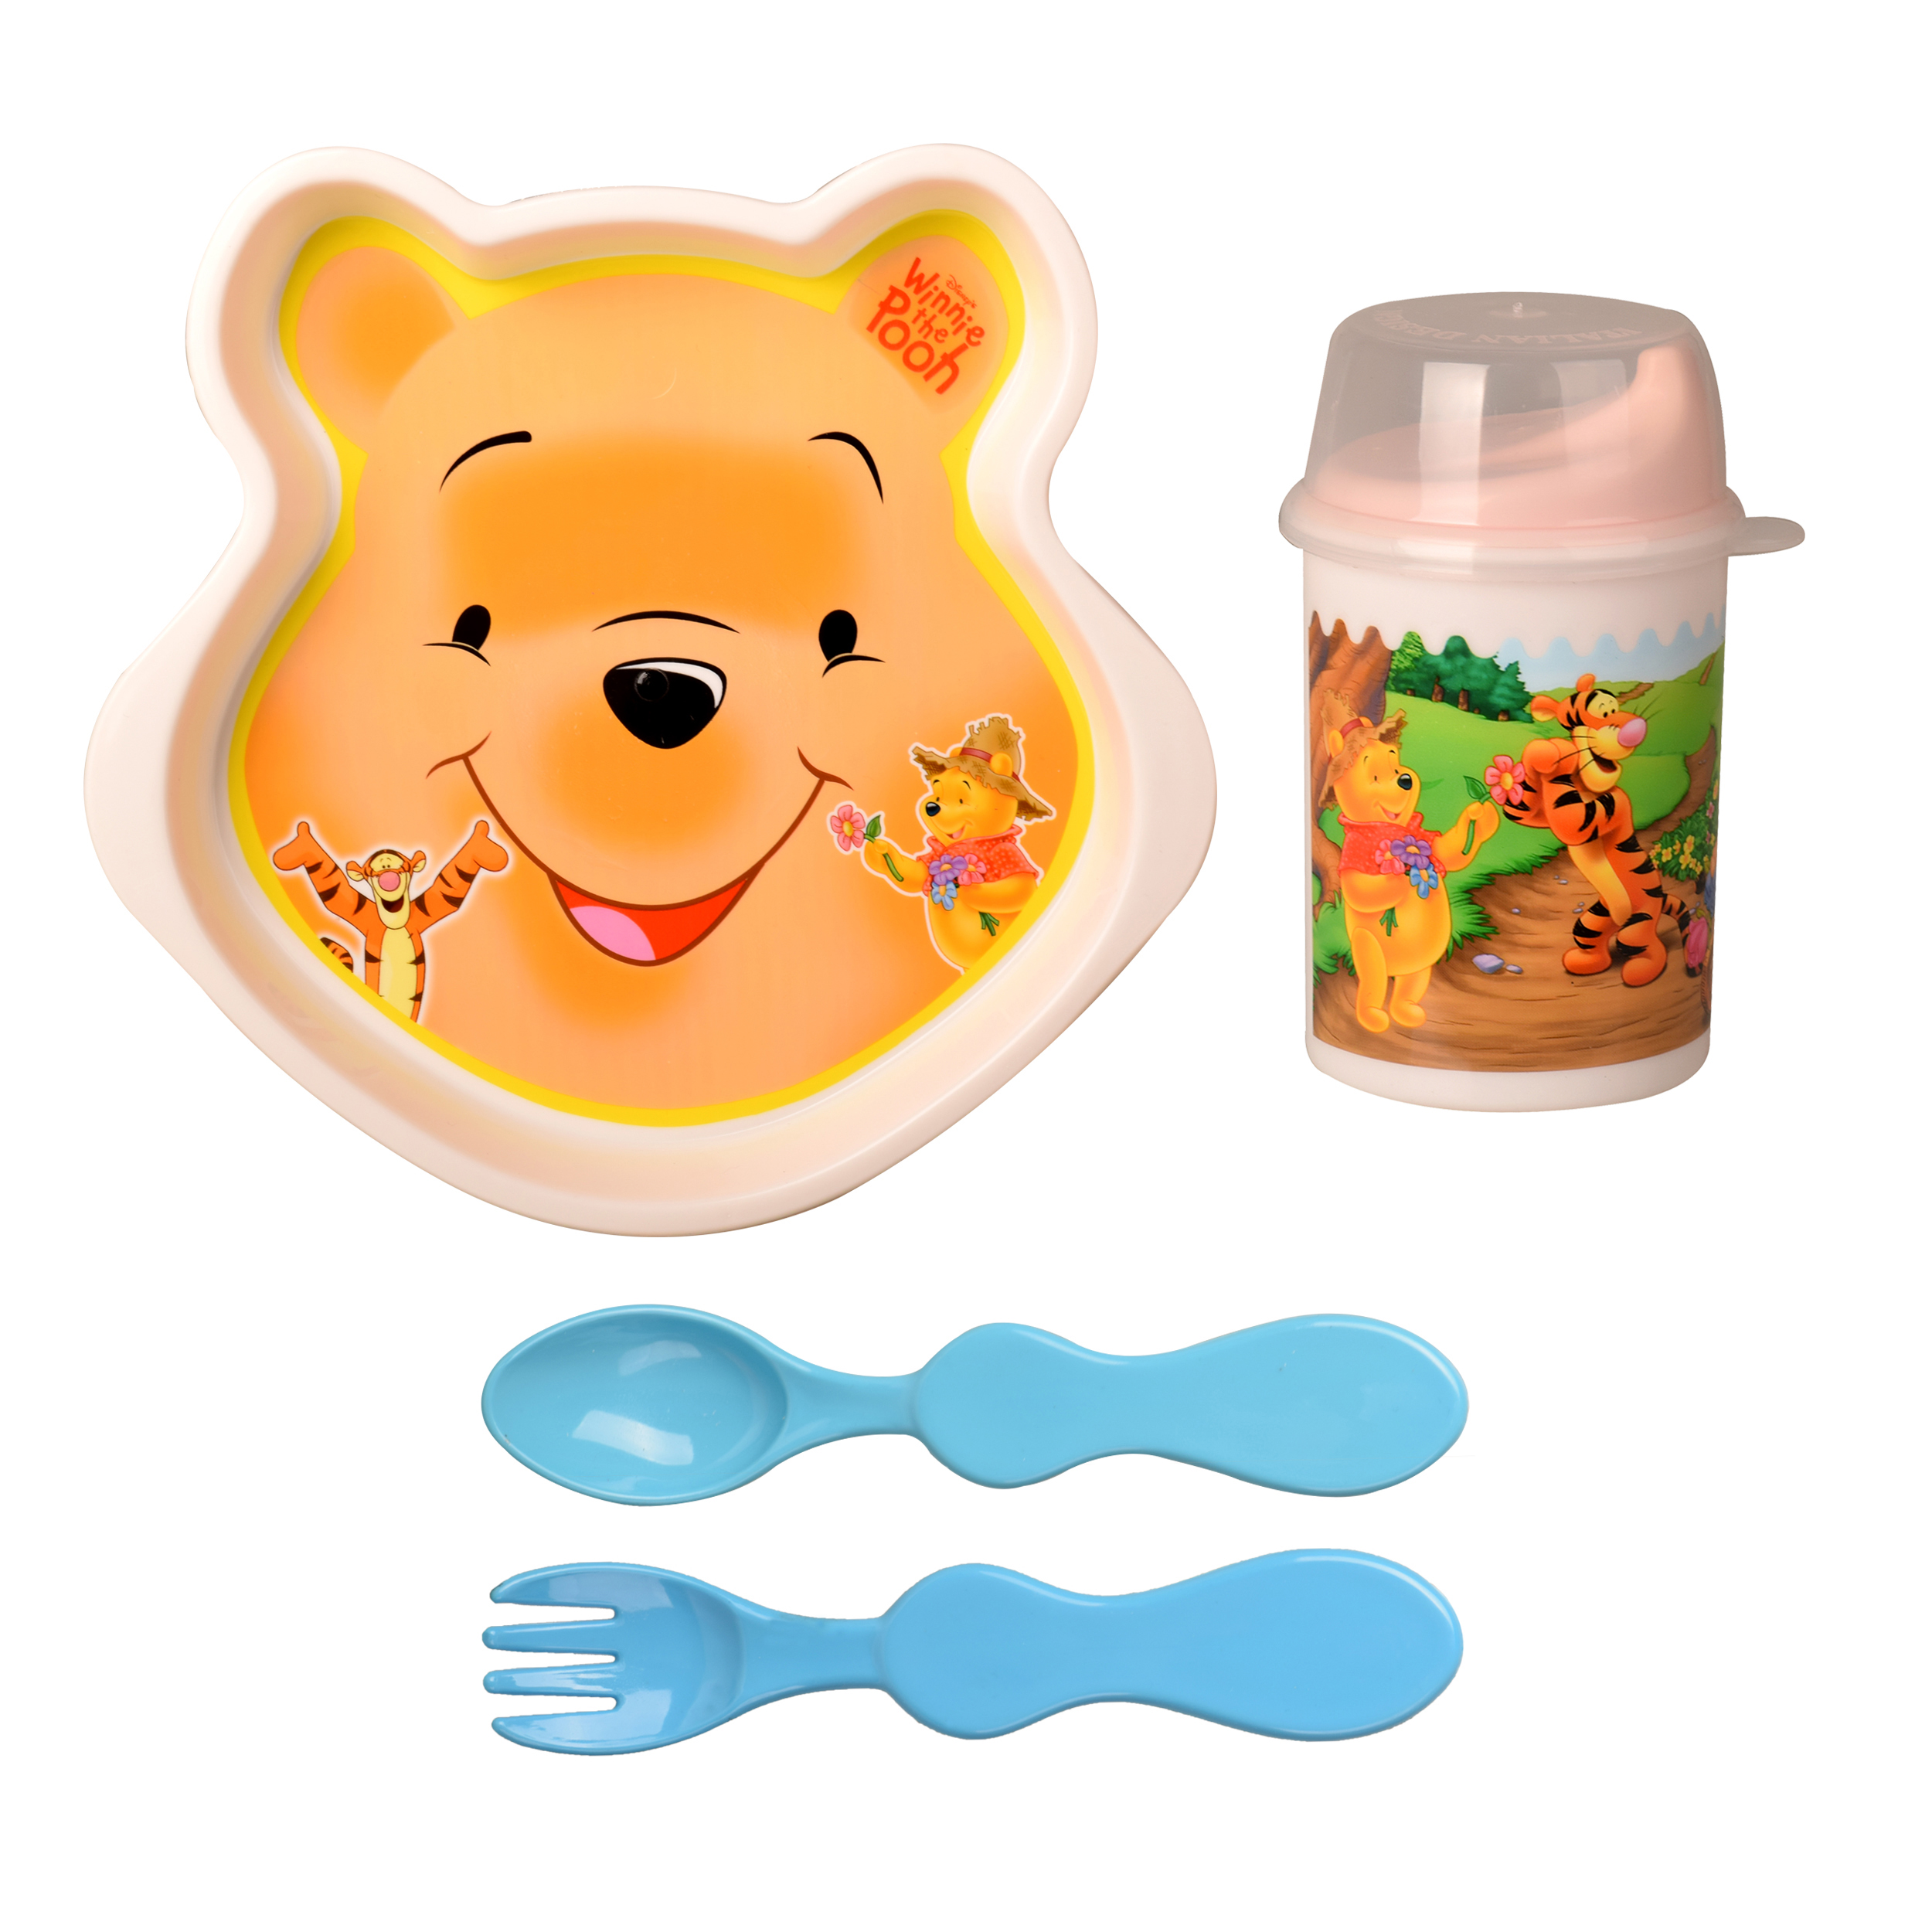 ظرف غذا کودک طرح Pooh کد M-0030 مجموعه 4 عددی